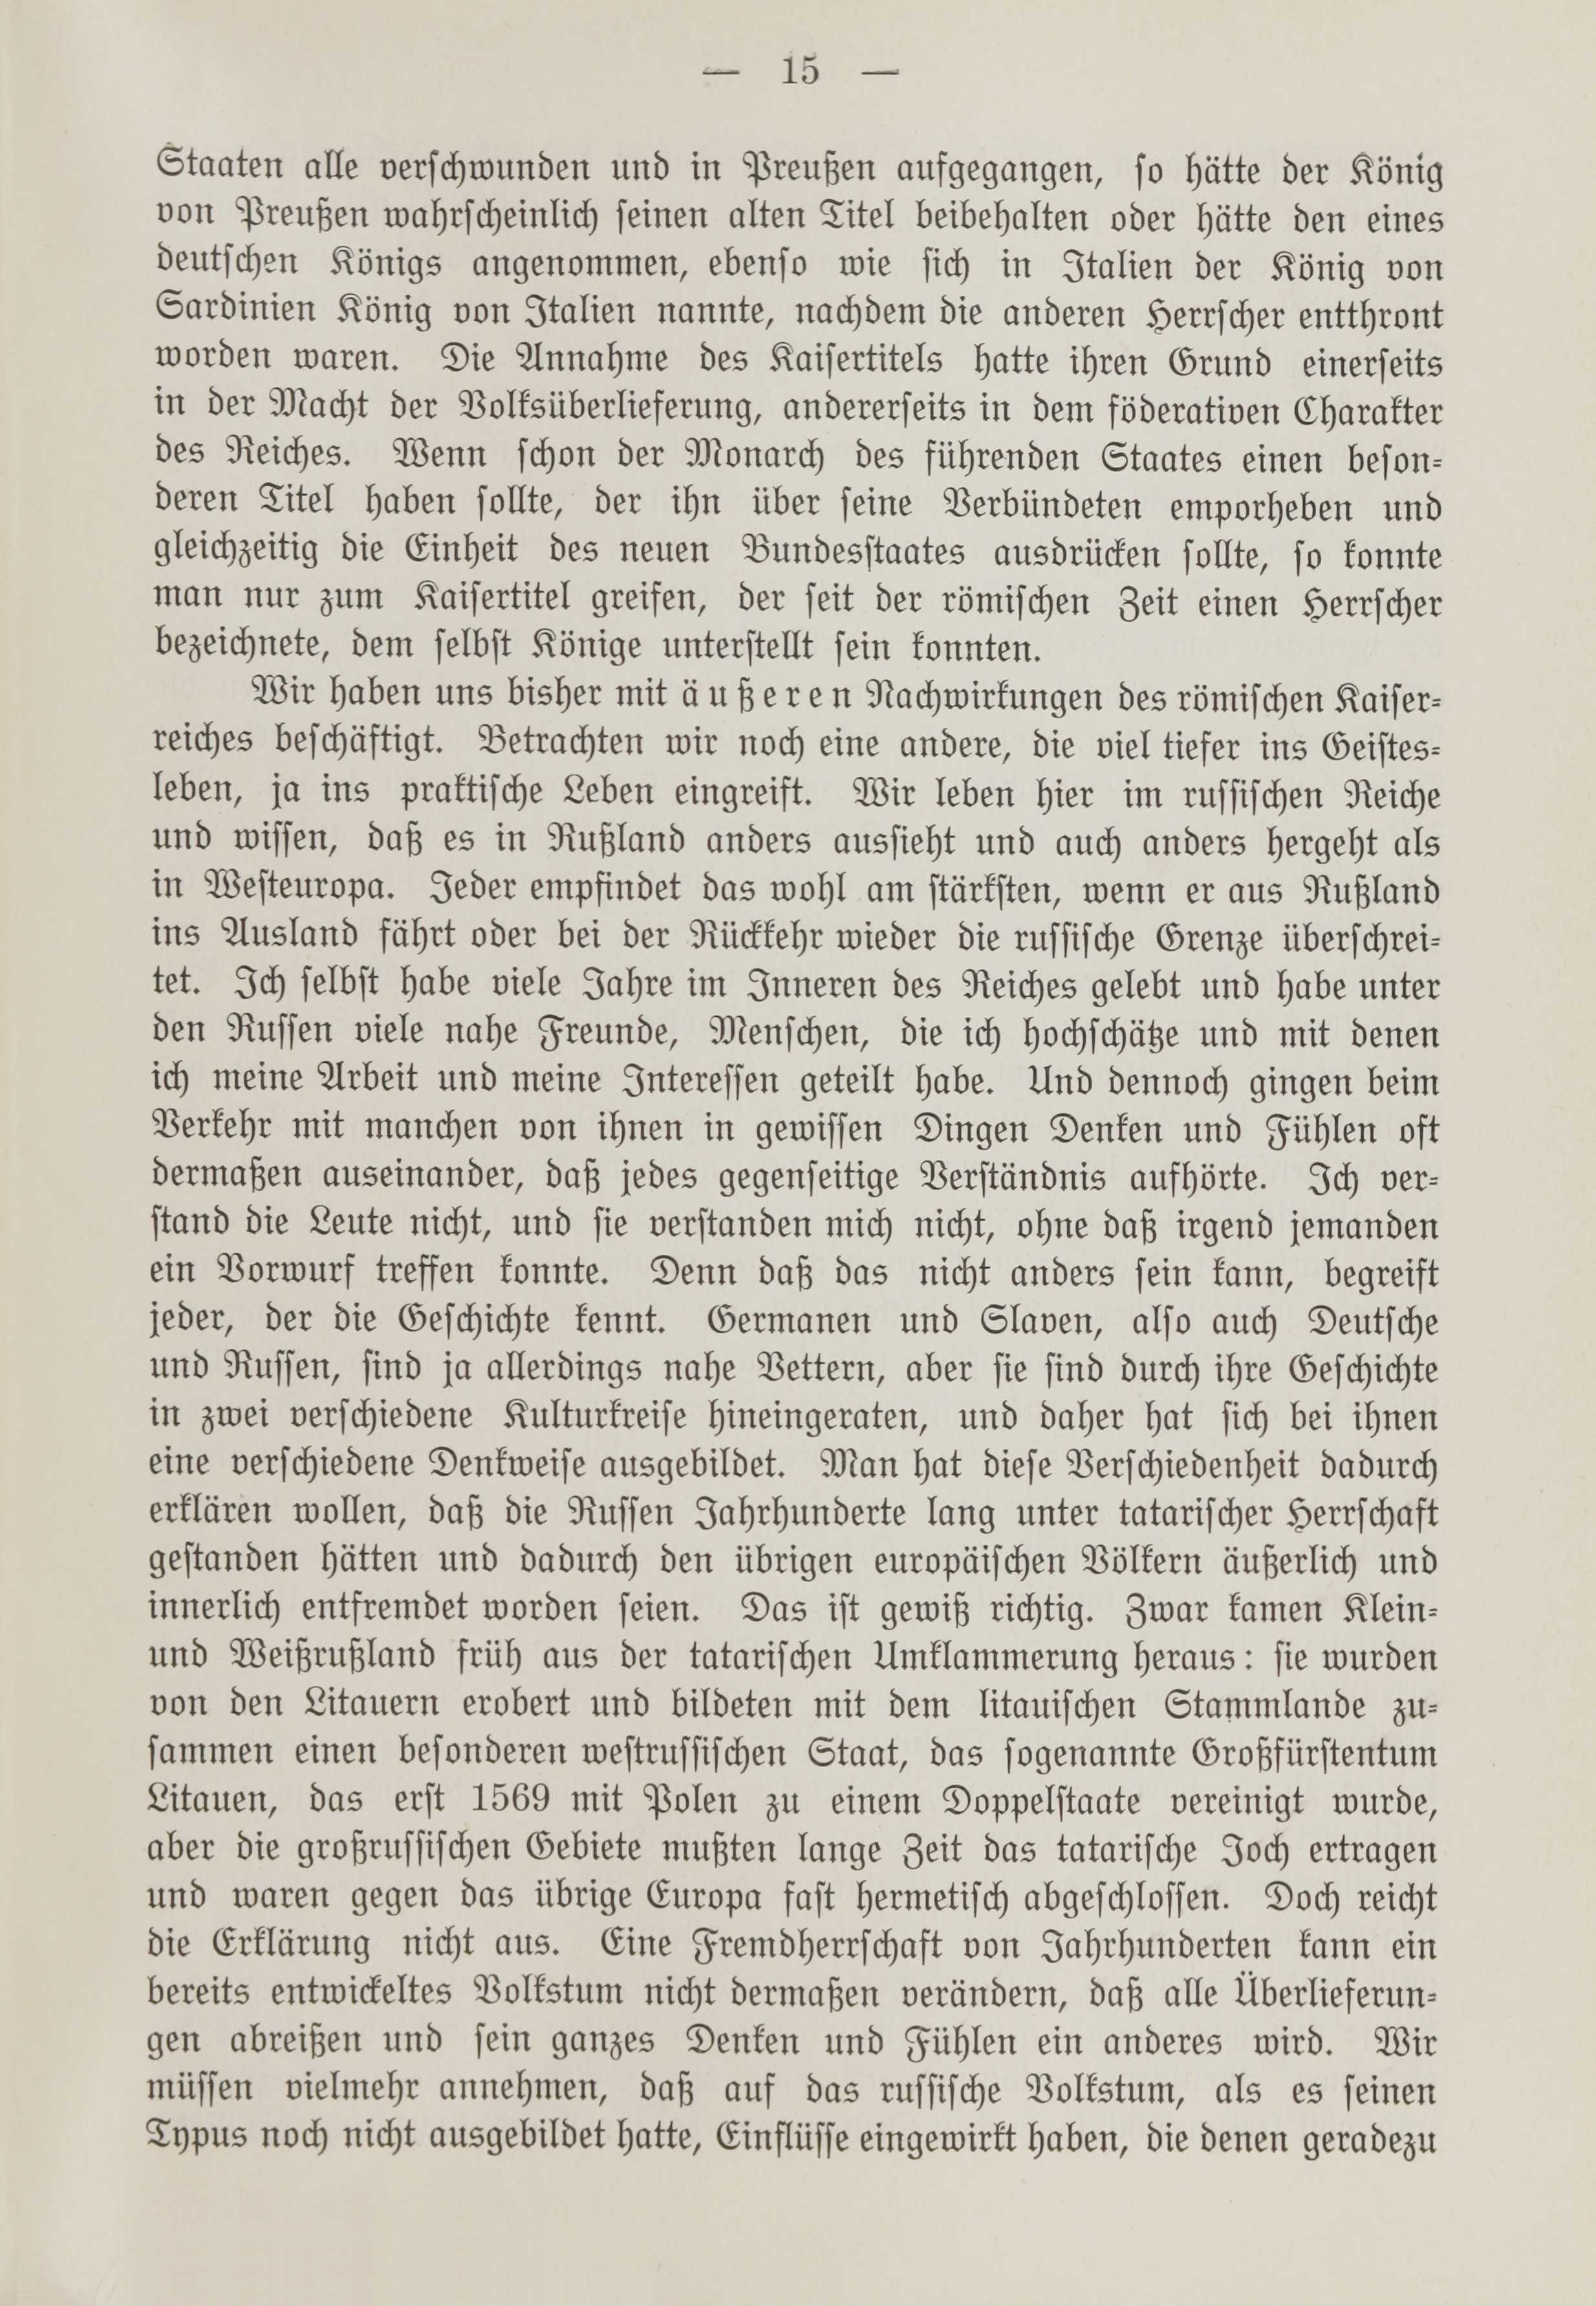 Deutsche Monatsschrift für Russland [1] (1912) | 22. (15) Main body of text